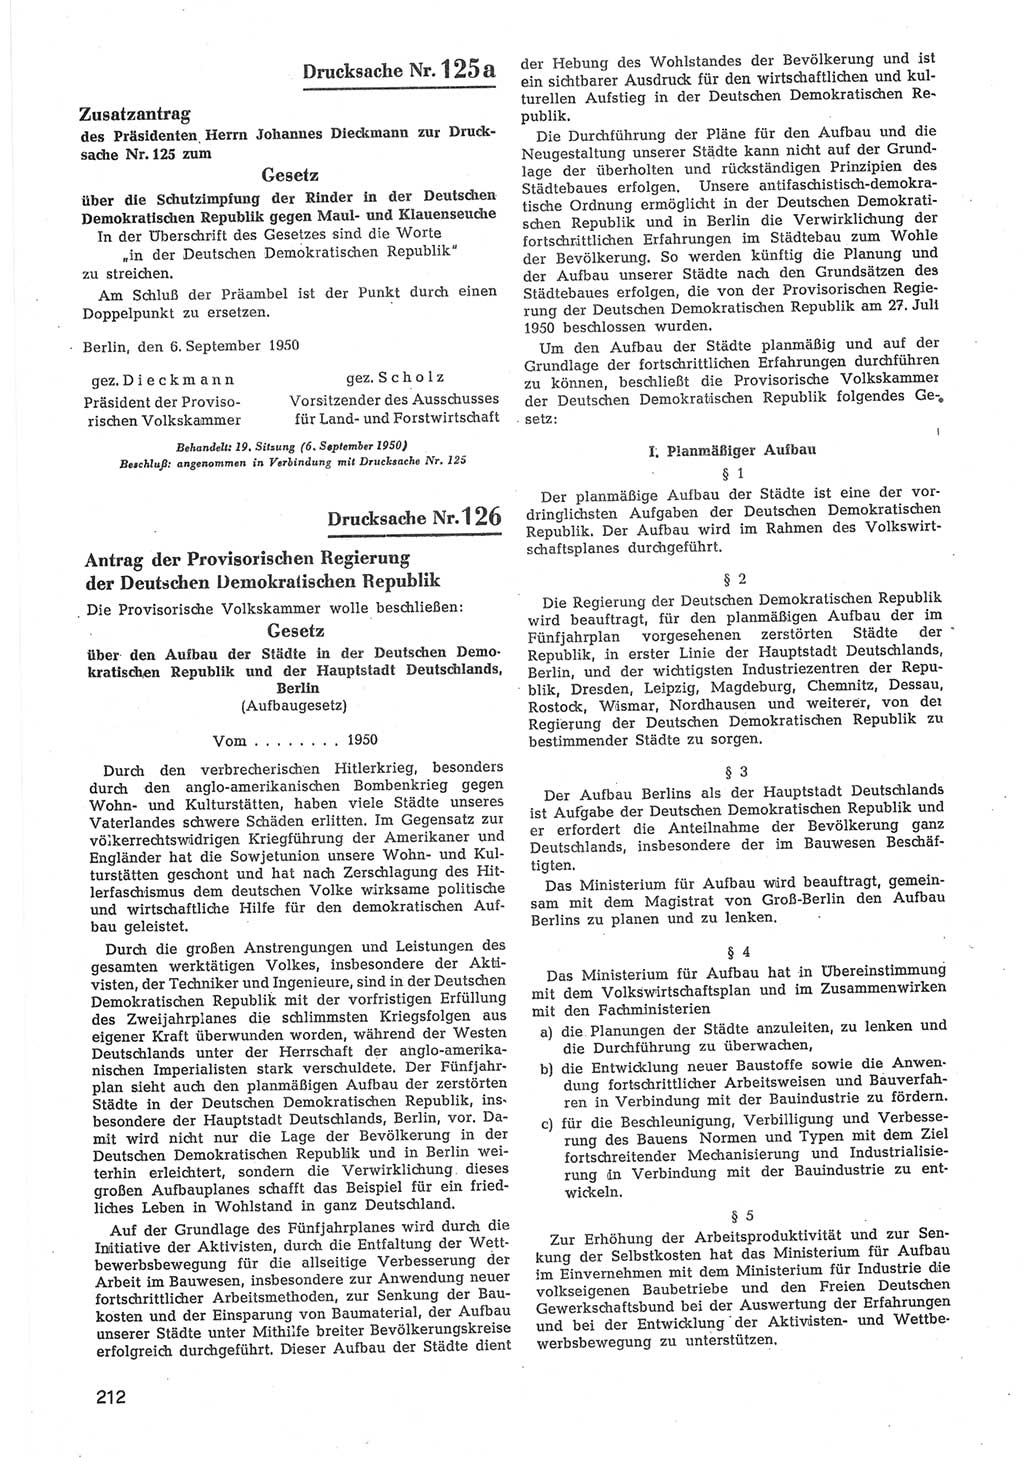 Provisorische Volkskammer (VK) der Deutschen Demokratischen Republik (DDR) 1949-1950, Dokument 814 (Prov. VK DDR 1949-1950, Dok. 814)